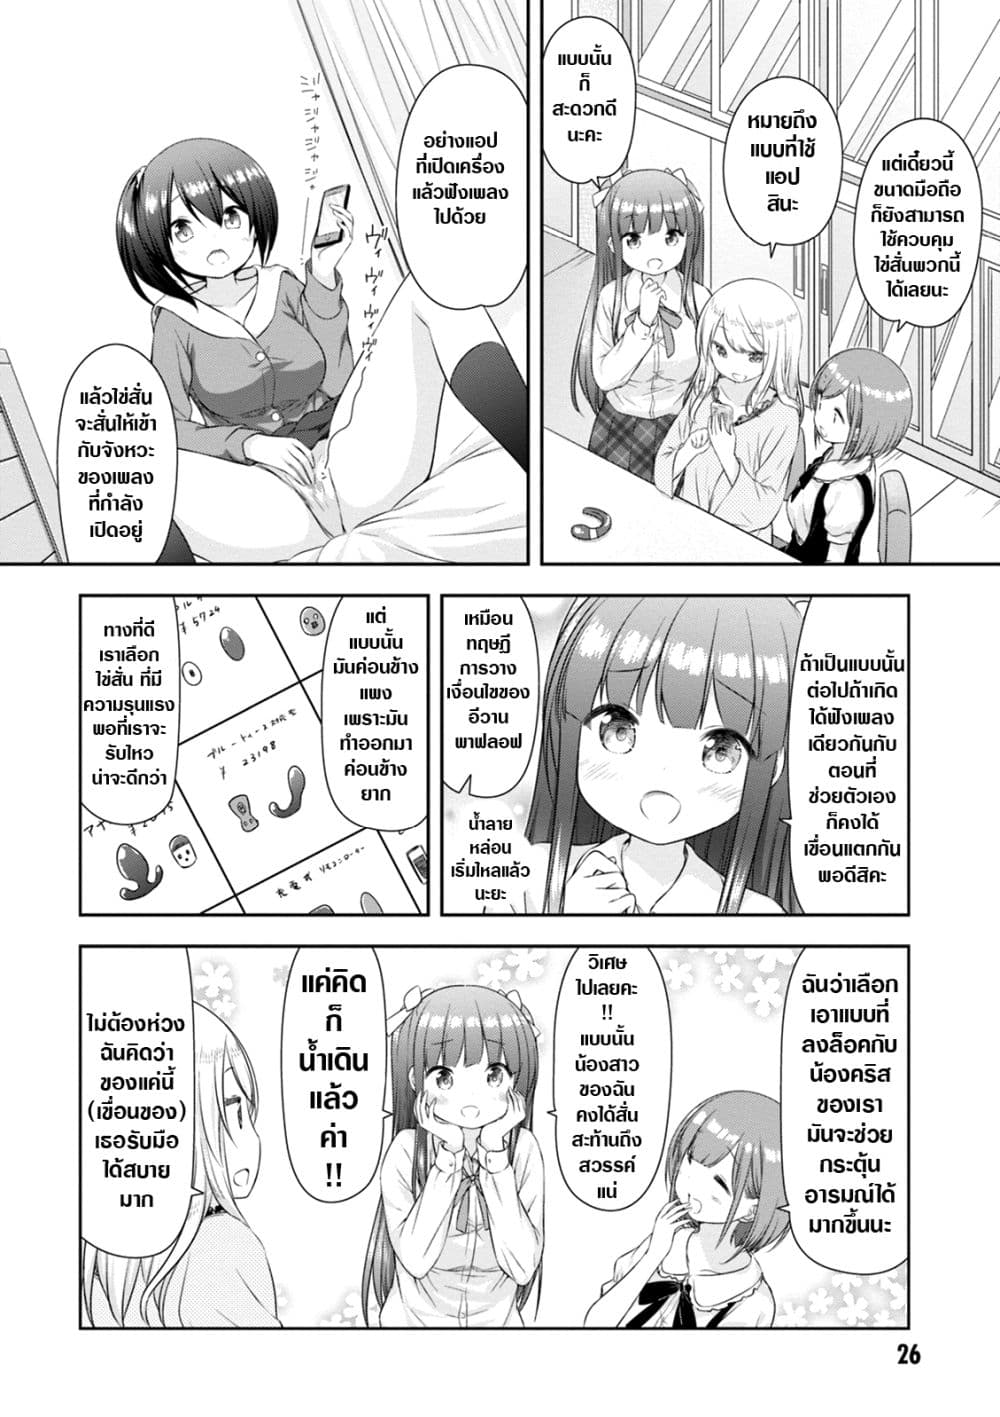 A Girl Meets Sex Toys Akane Oguri Indulge In Onanism2 (6)